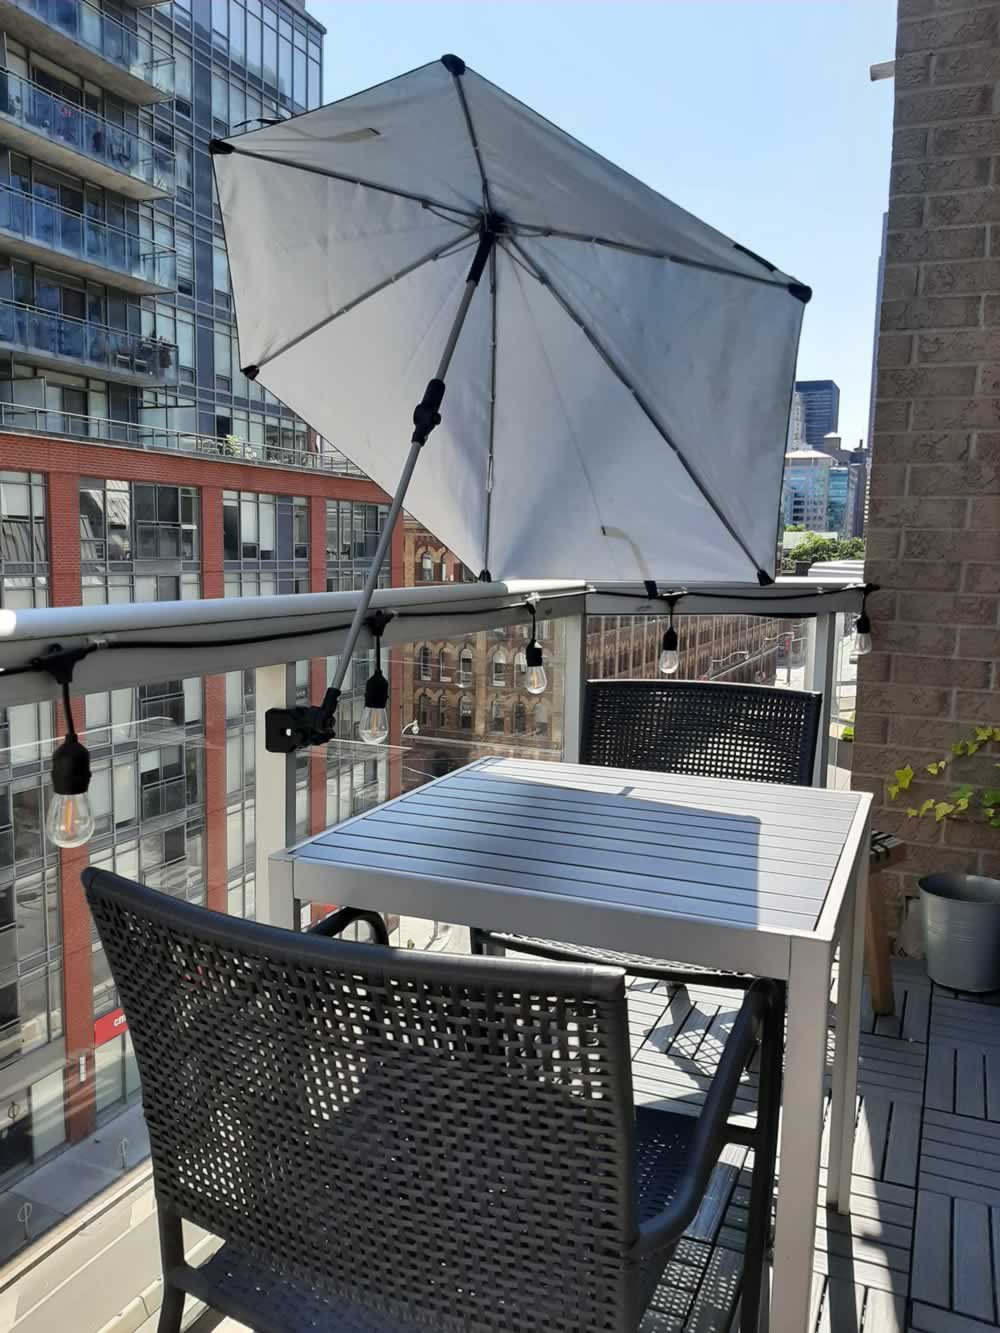 Balcony umbrella providing shade on table.